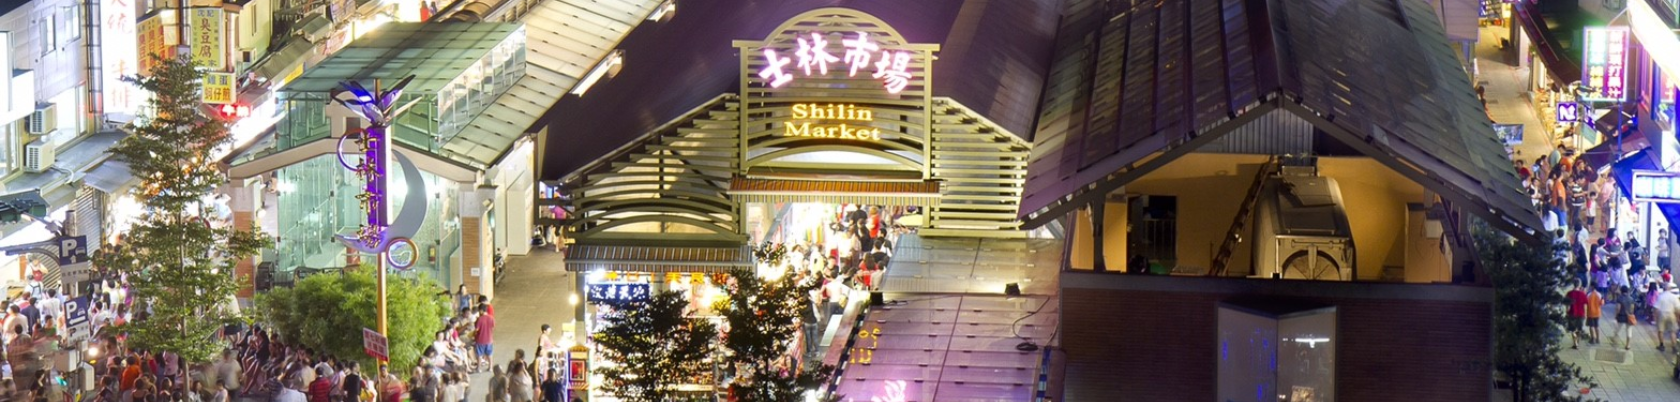 臺北市士林市場